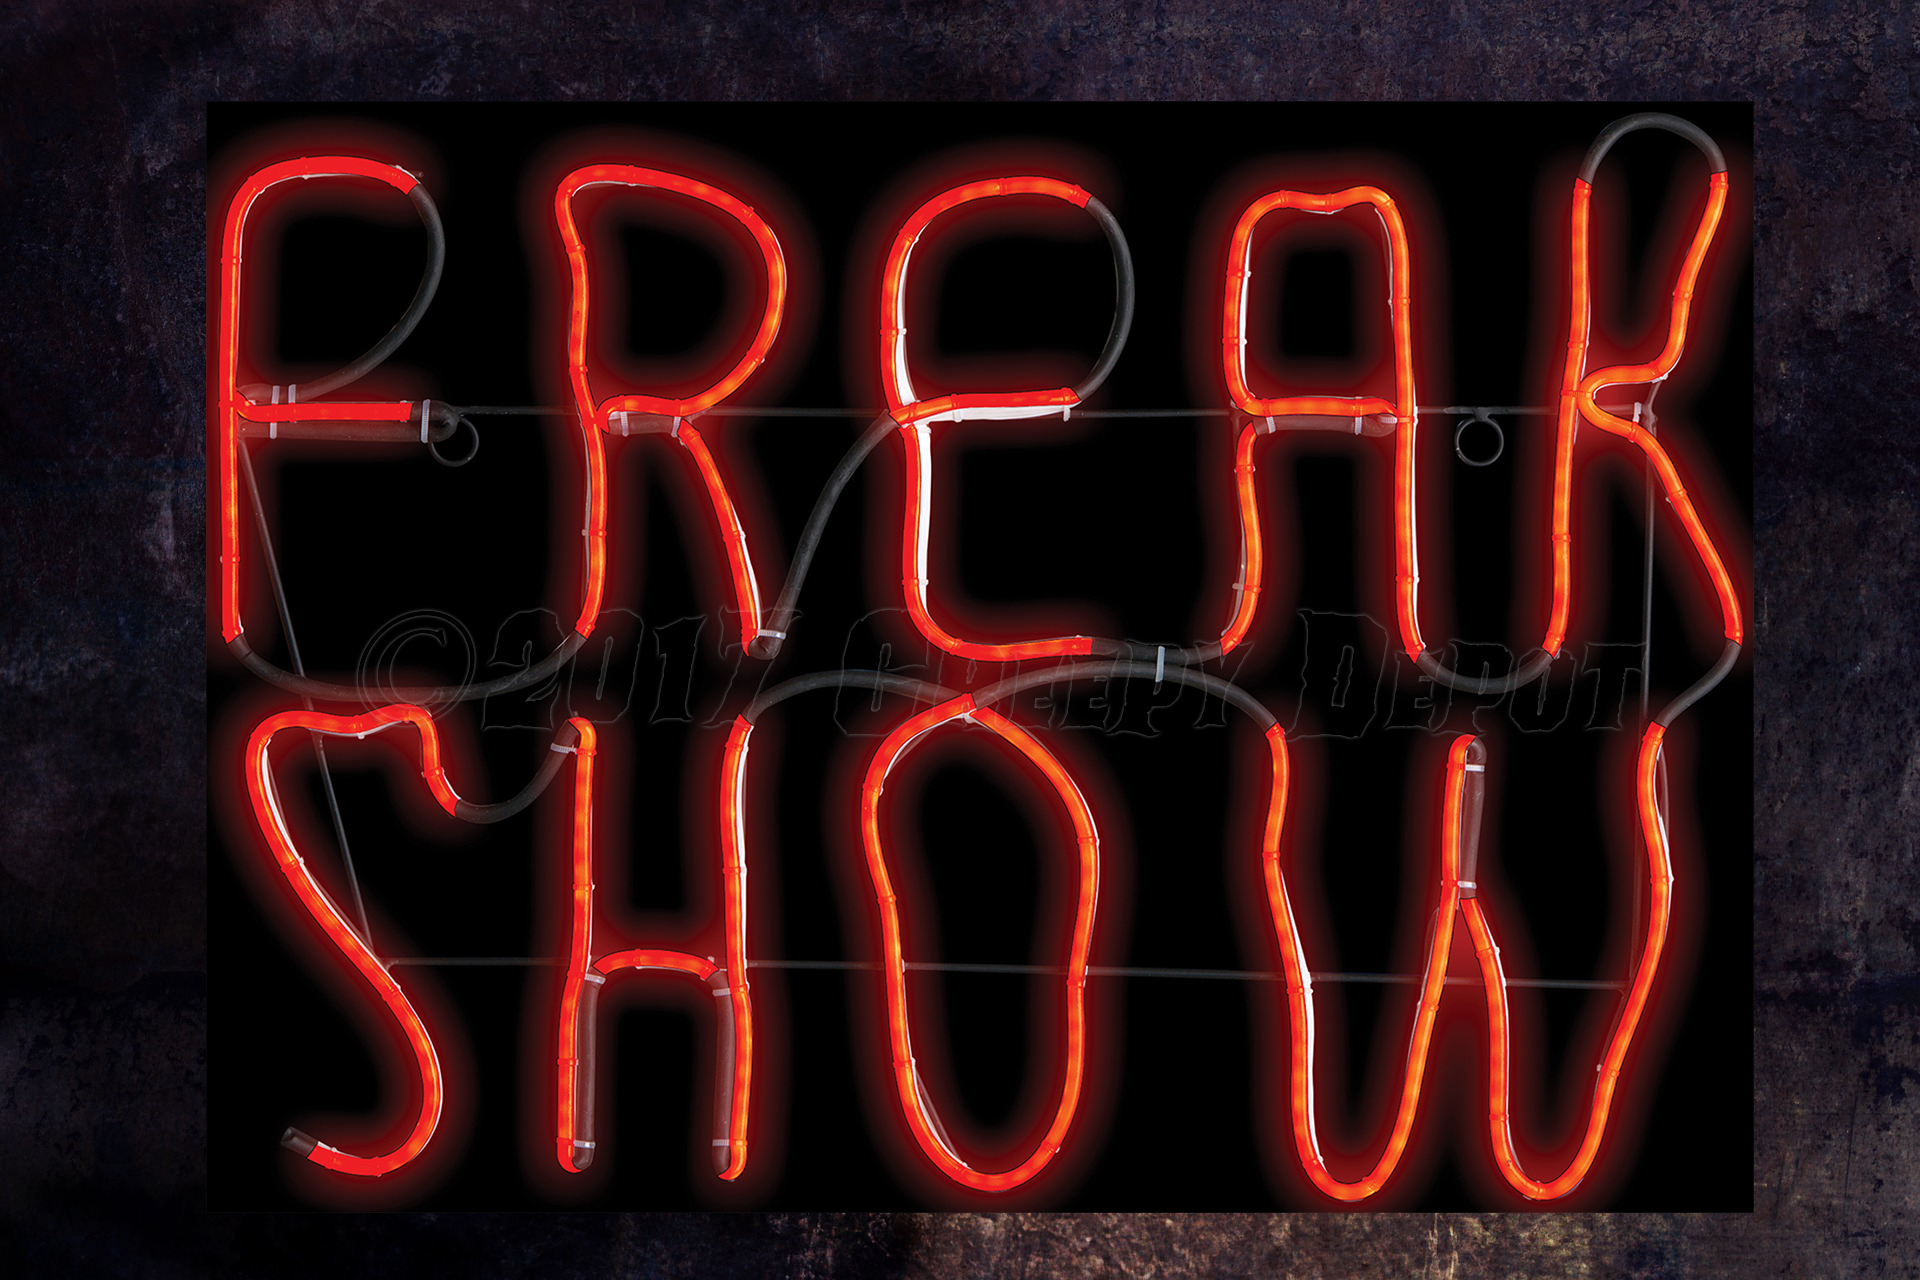 Freak Show neon / LED sign - NEW